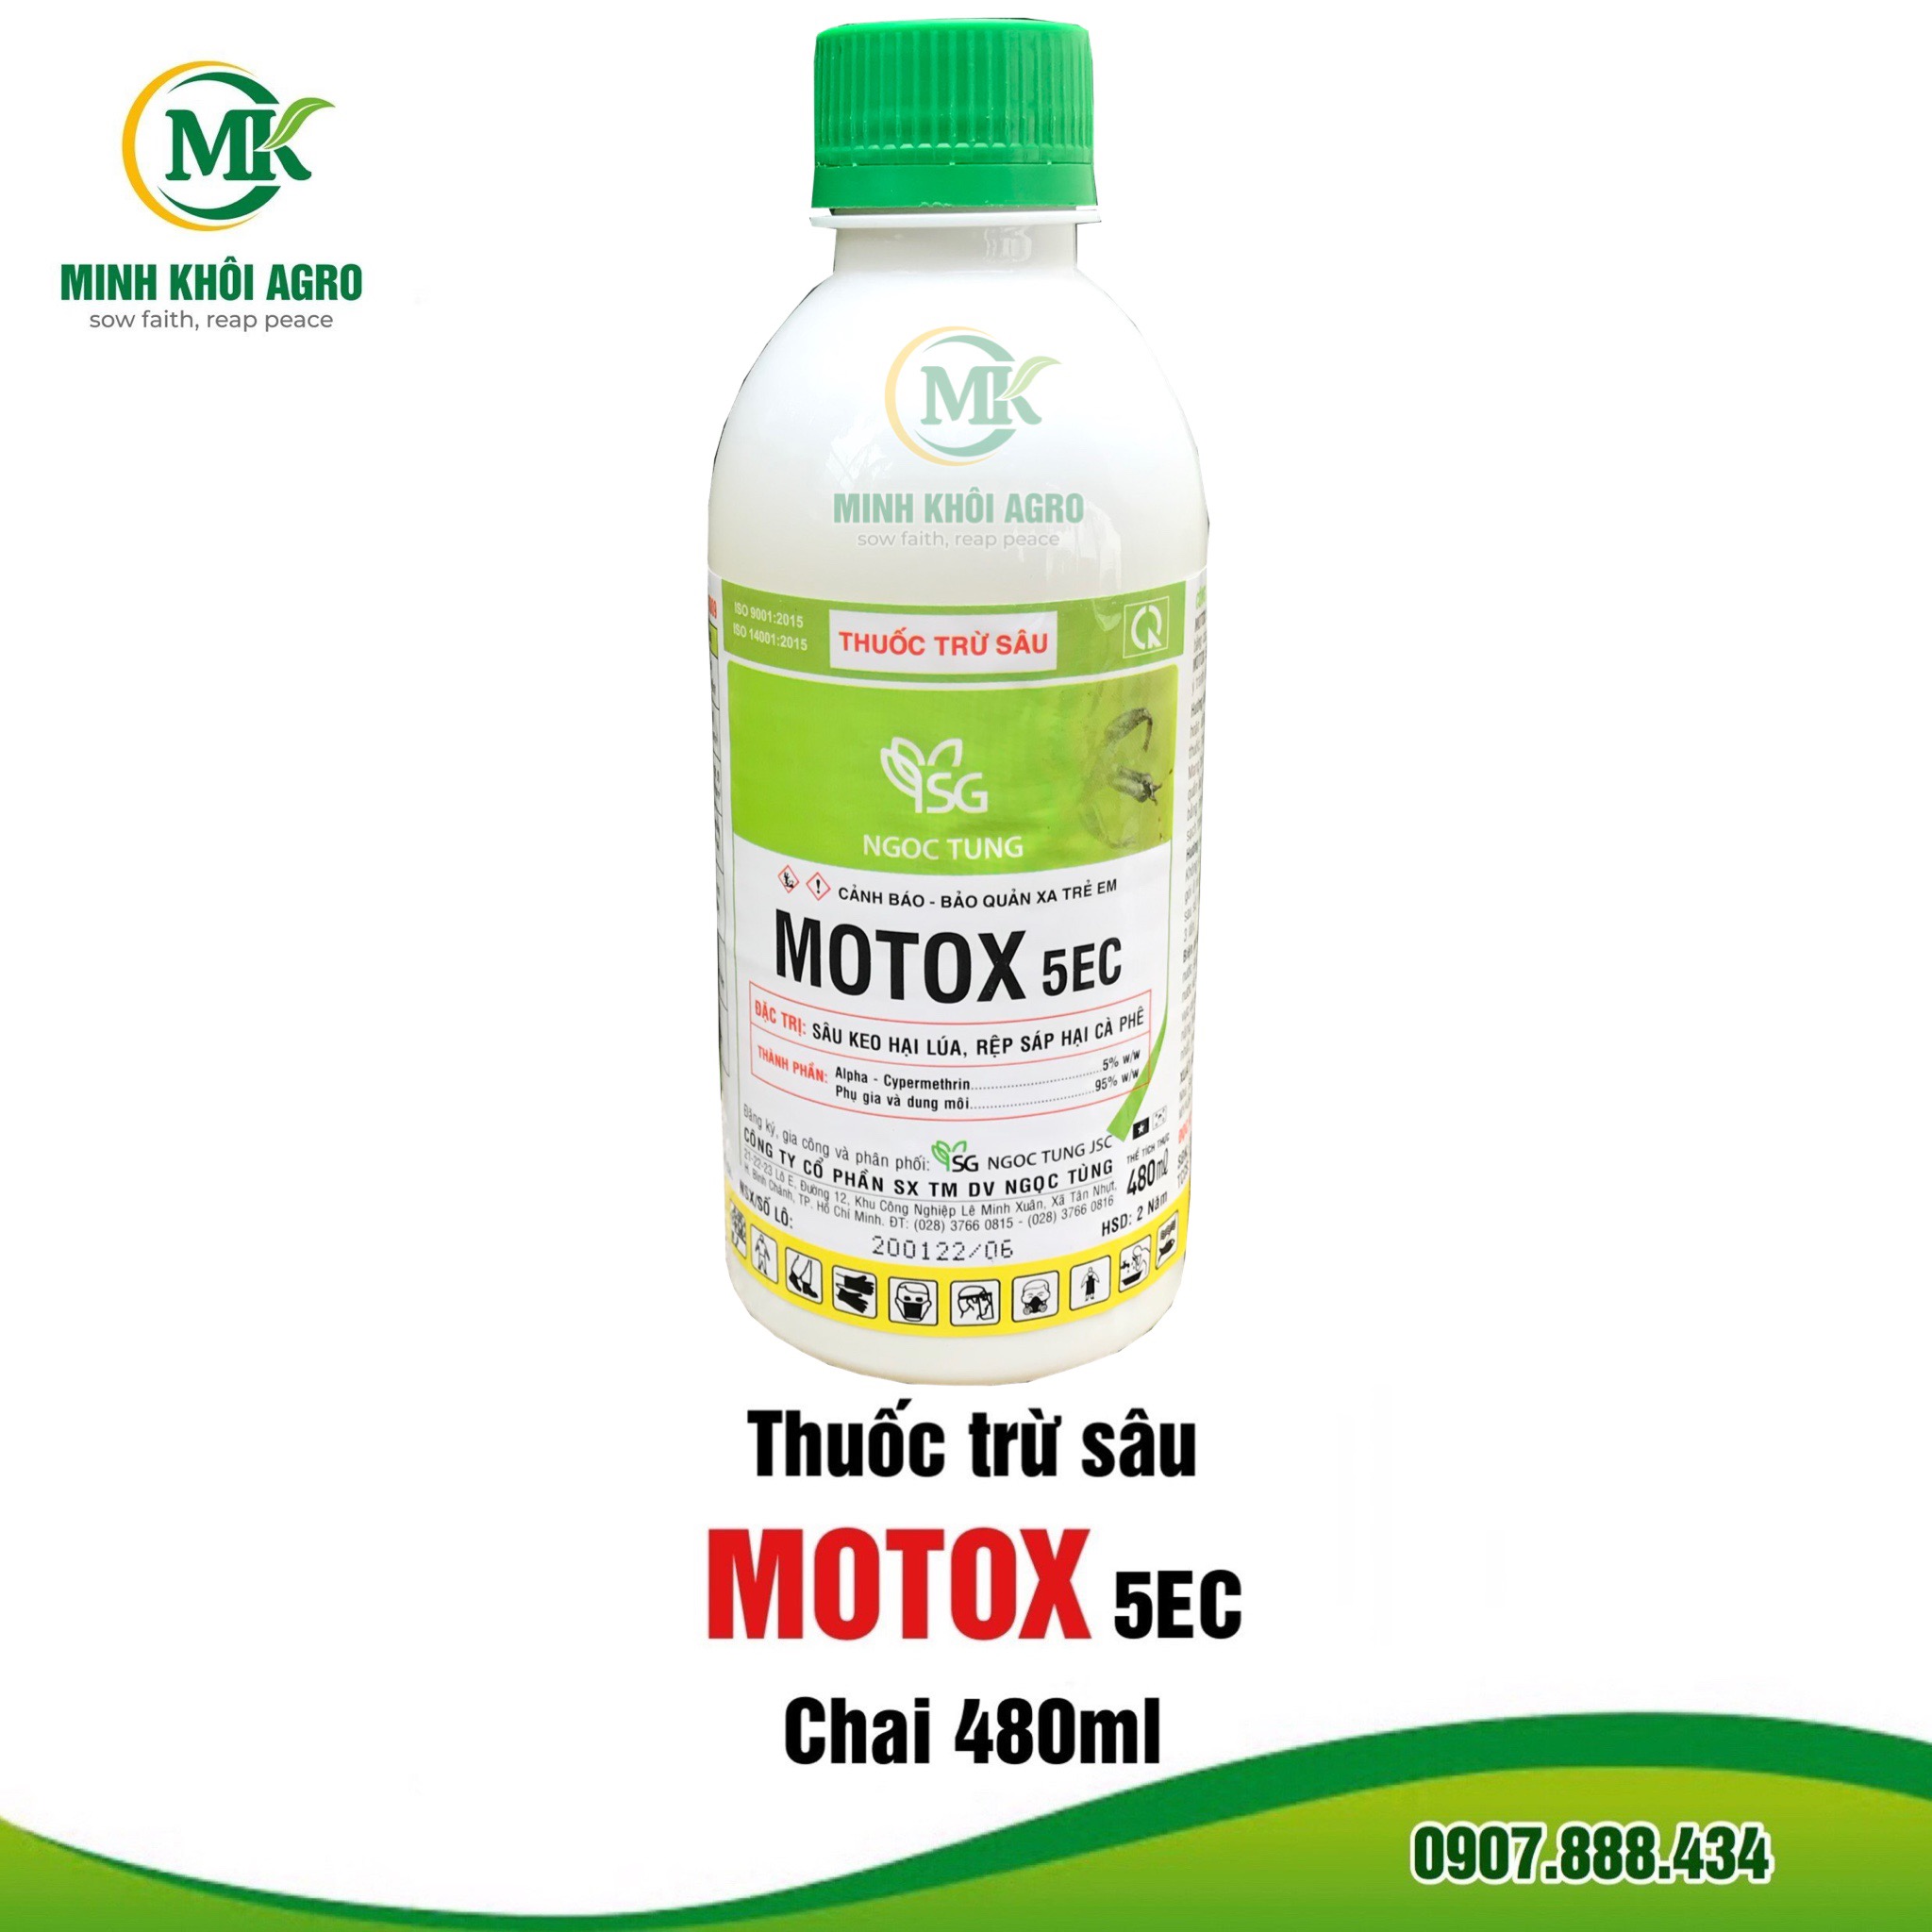 Thuốc trừ sâu Motox 5EC - Chai 480ml